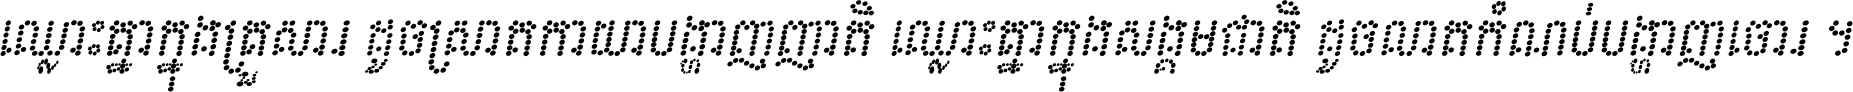 Kh Baphnom Pixel1 Italic